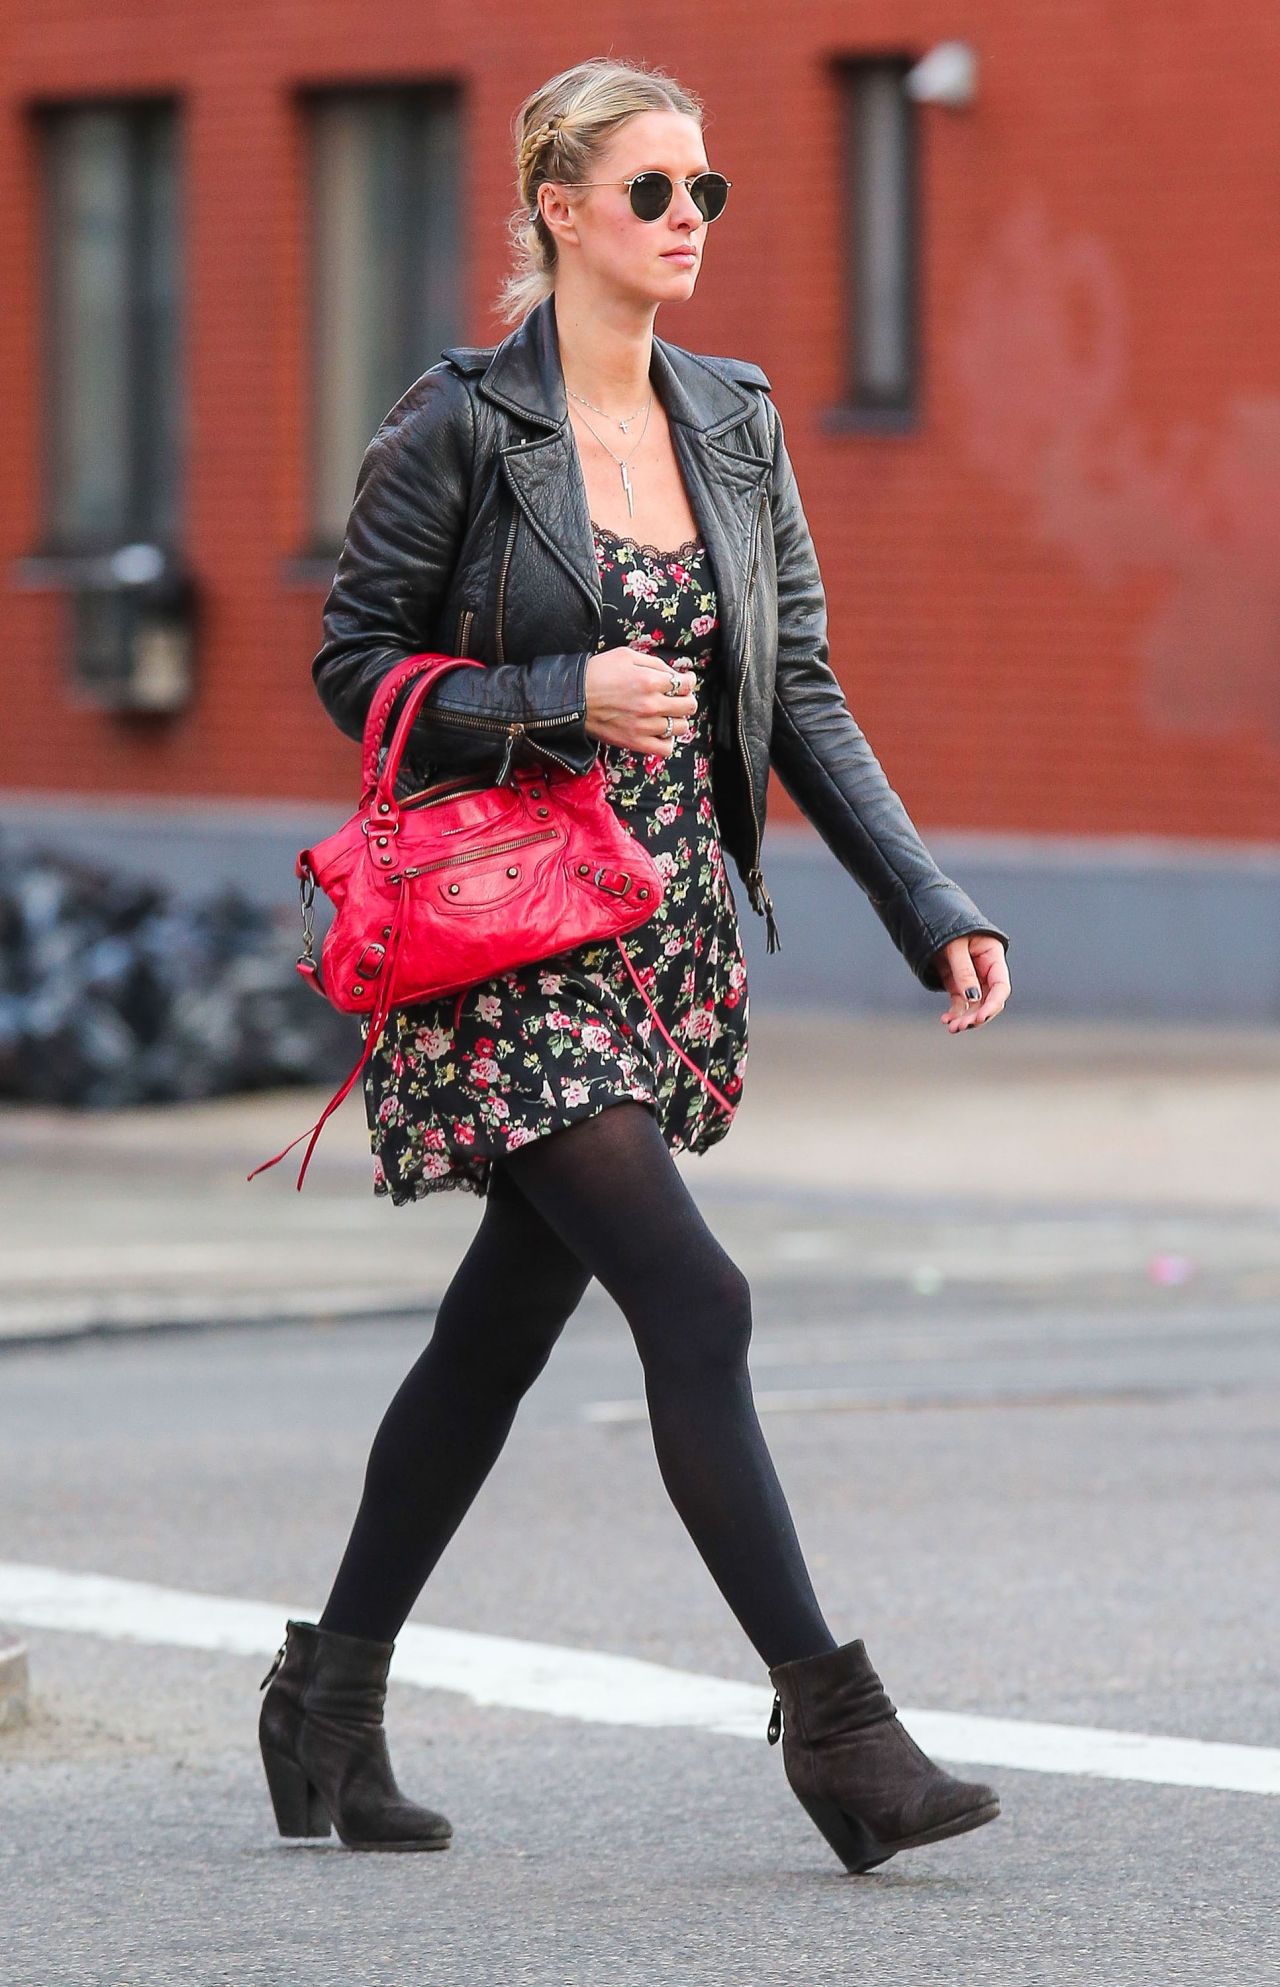 Nicky Hilton New York City January 21, 2016 – Star Style